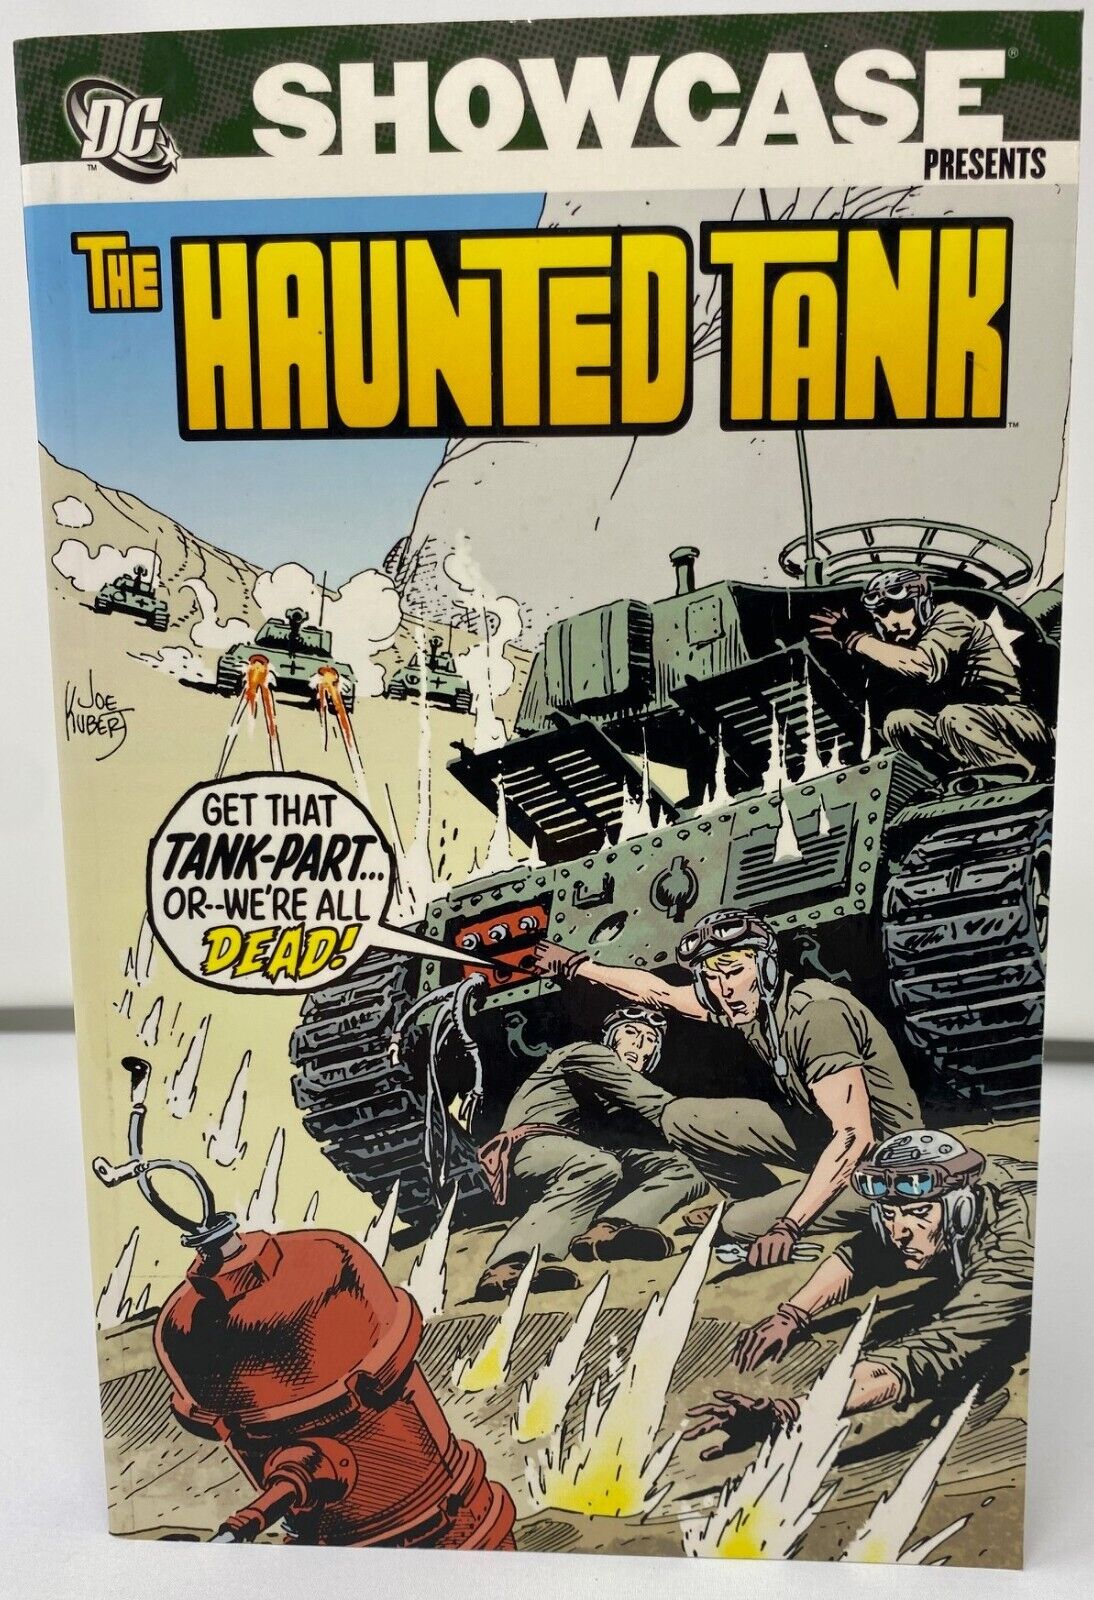 DC Comics Showcase Presents The Haunted Tank Vol 2